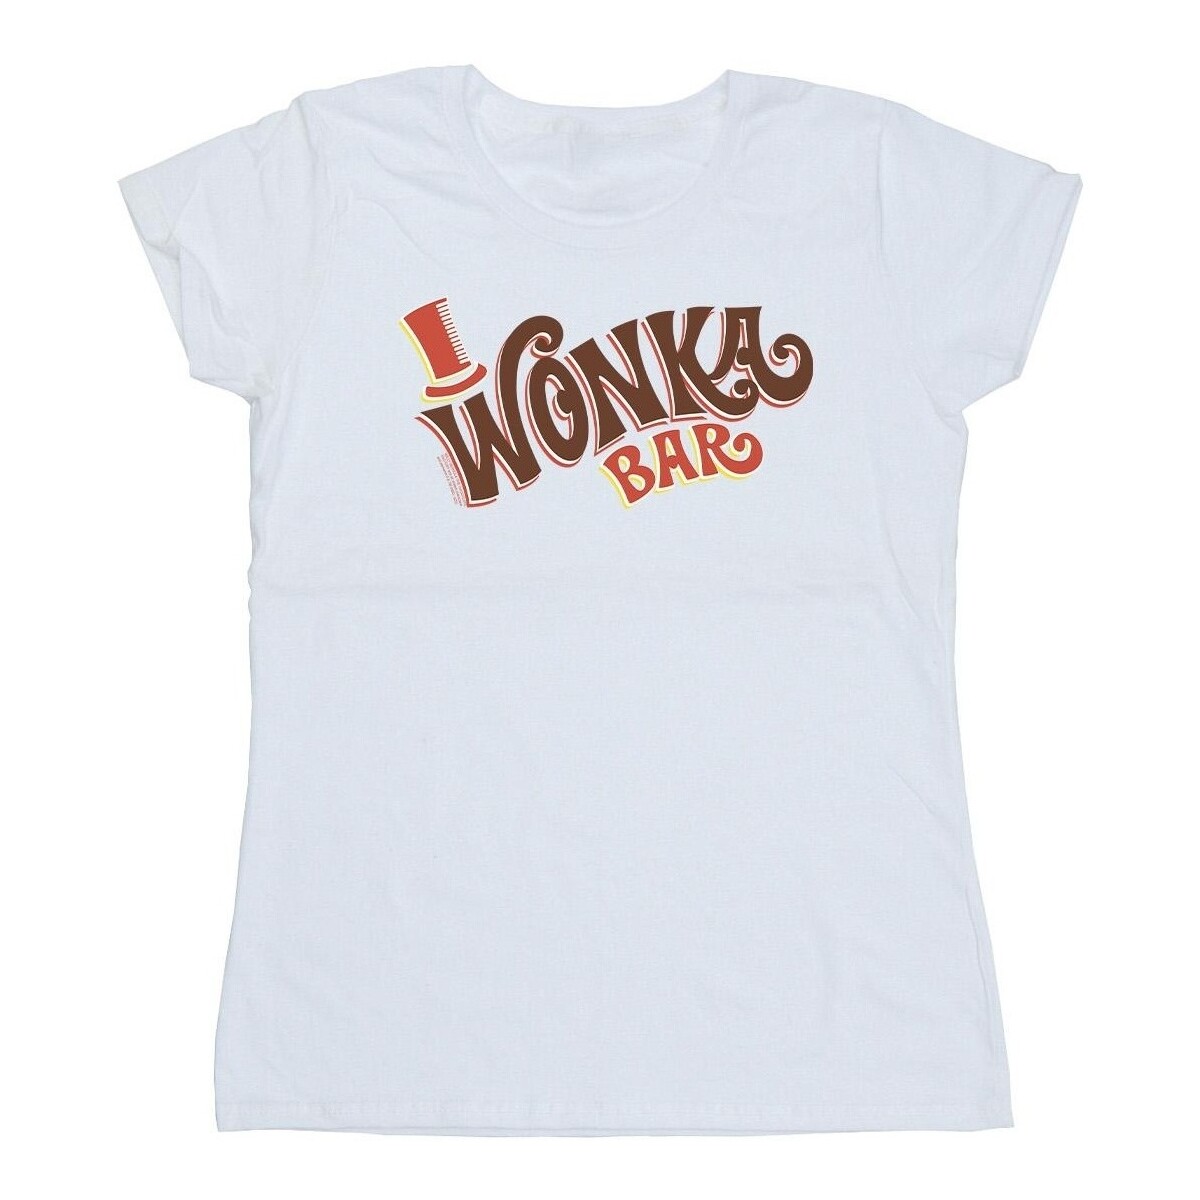 textil Mujer Camisetas manga larga Willy Wonka Bar Logo Blanco